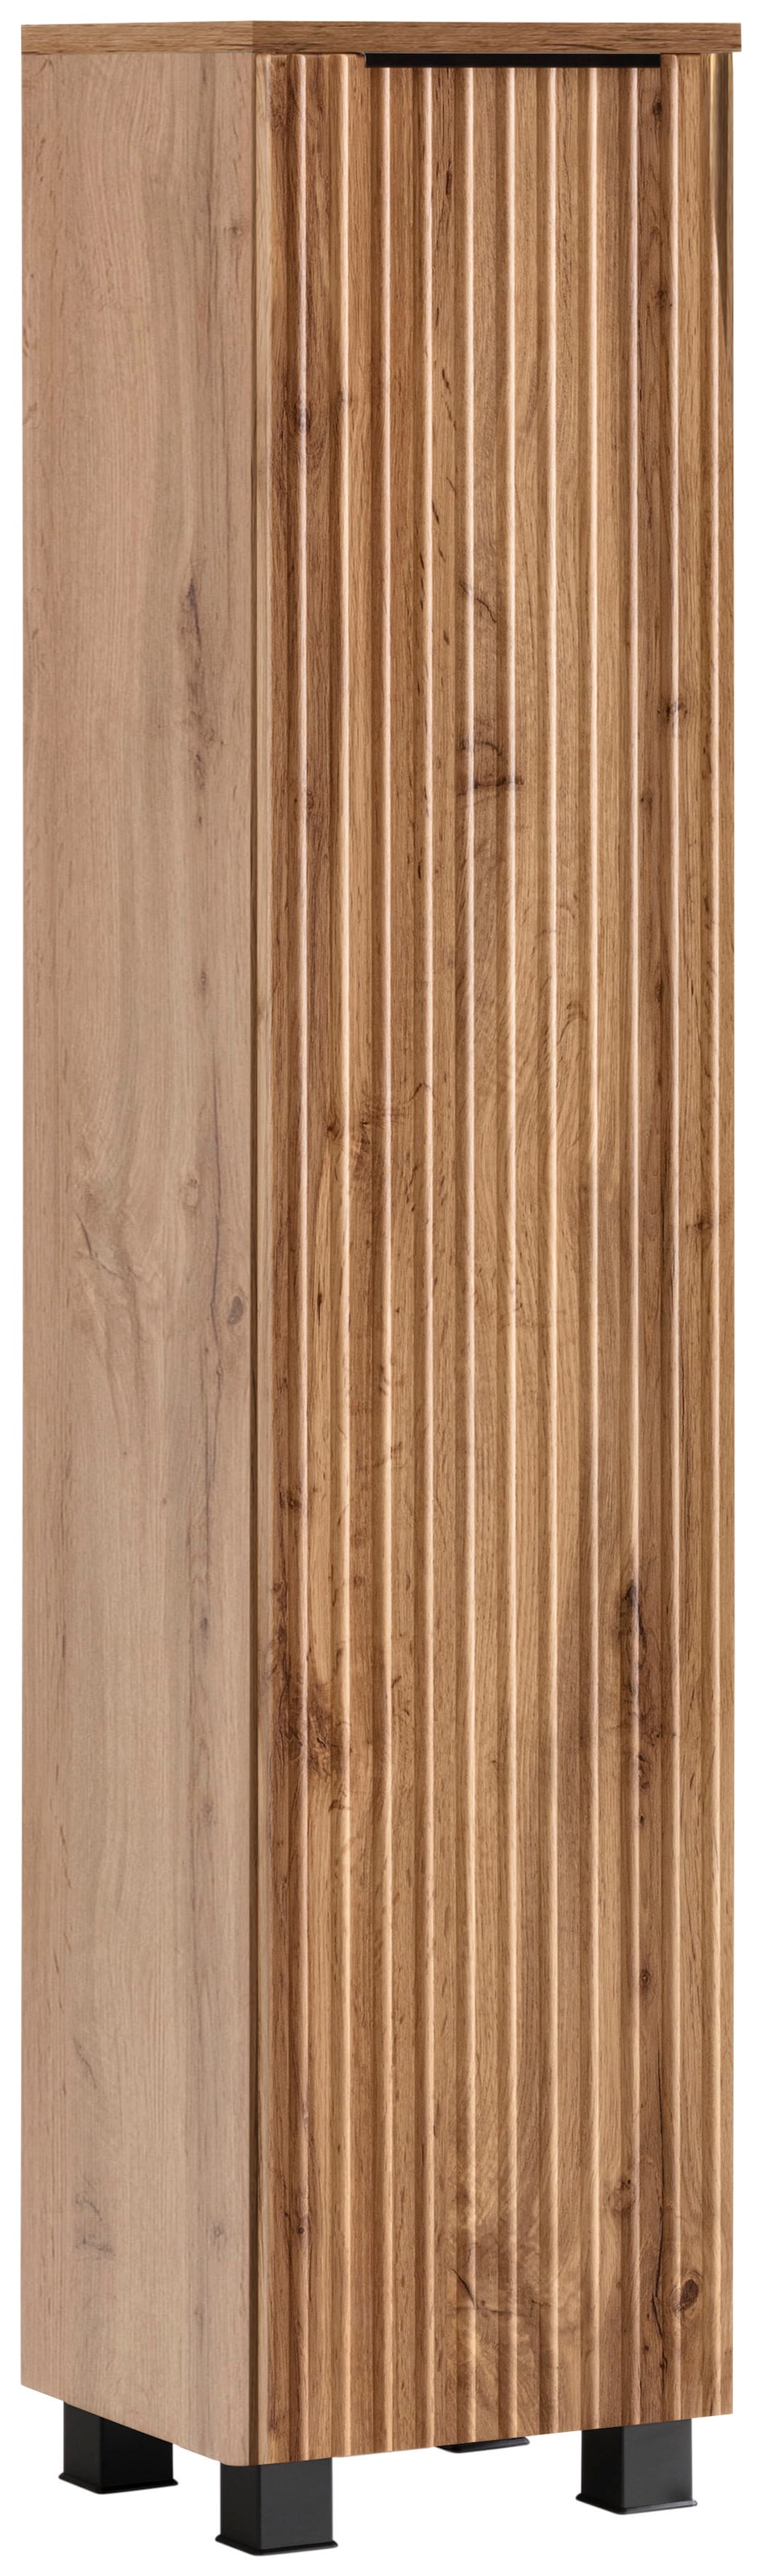 HELD MÖBEL Midischrank »Trento, verschiedene Ausführungen und Farben«, Badmöbel, Breite 30 cm, 1 Tür, Made in Germany